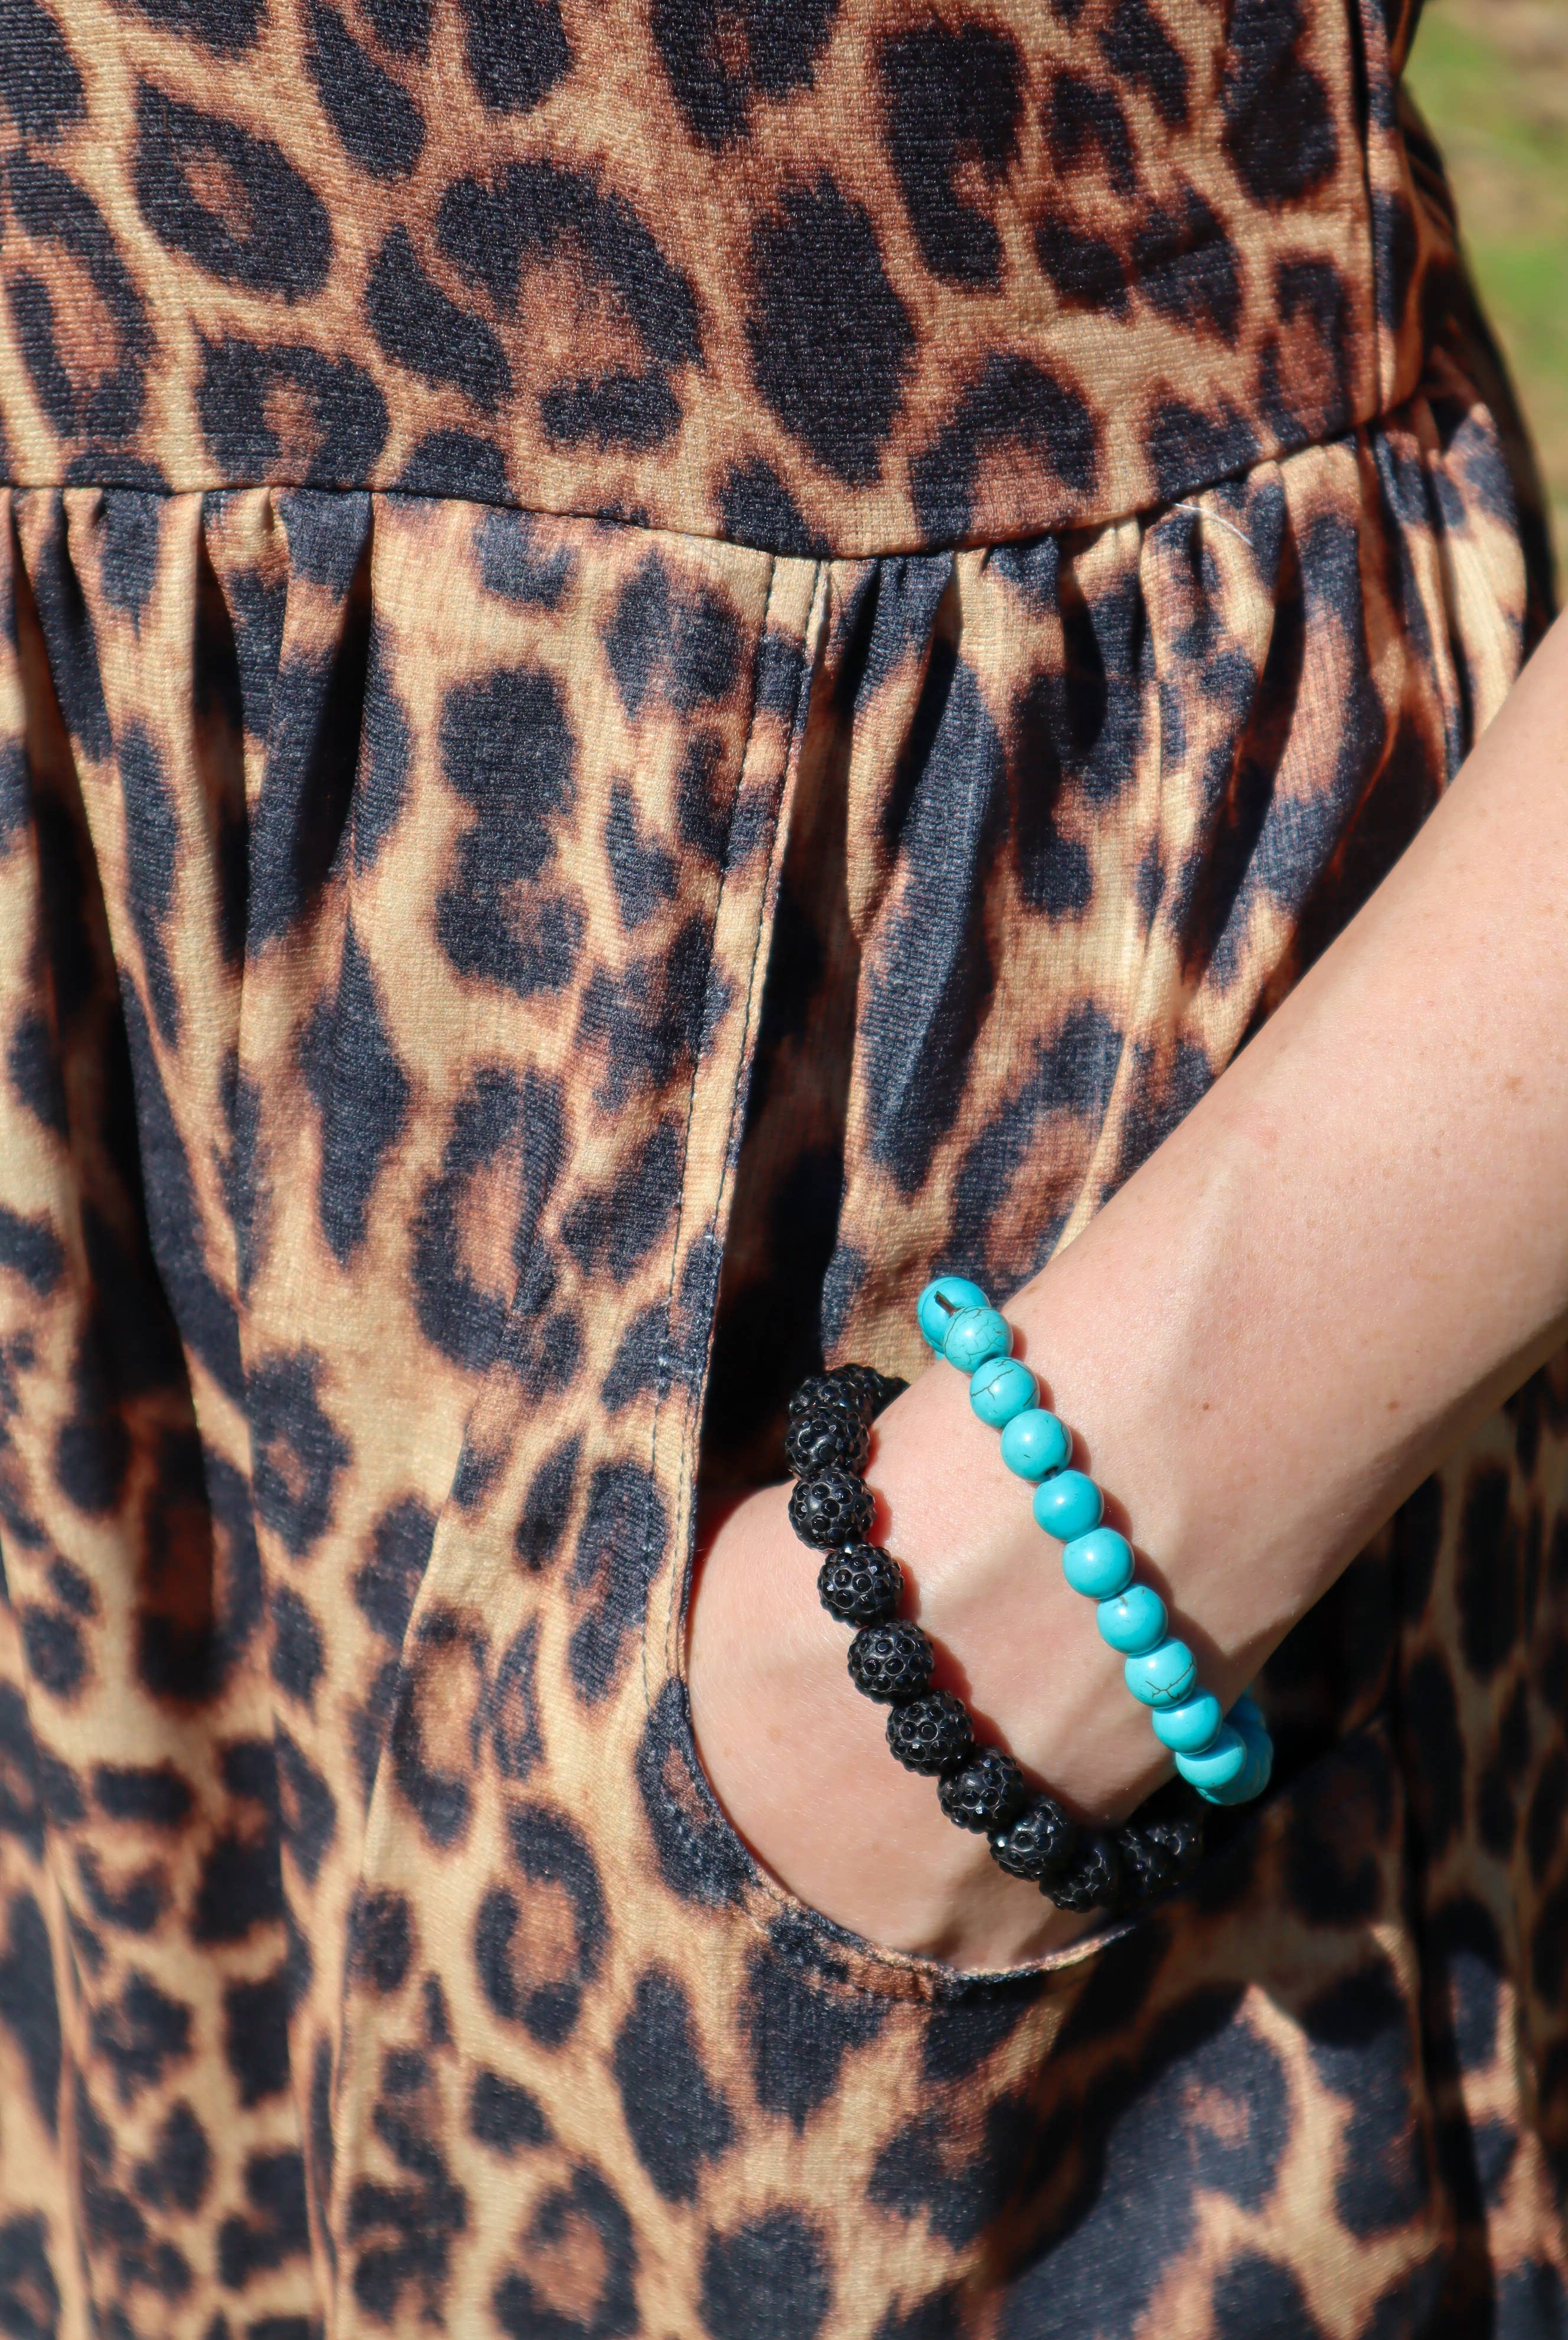 Leopard Buffalo Jill Distressed Hem Summer Dress / Stuffology Boutique-Dresses-Merigold Kiss-Stuffology - Where Vintage Meets Modern, A Boutique for Real Women in Crosbyton, TX